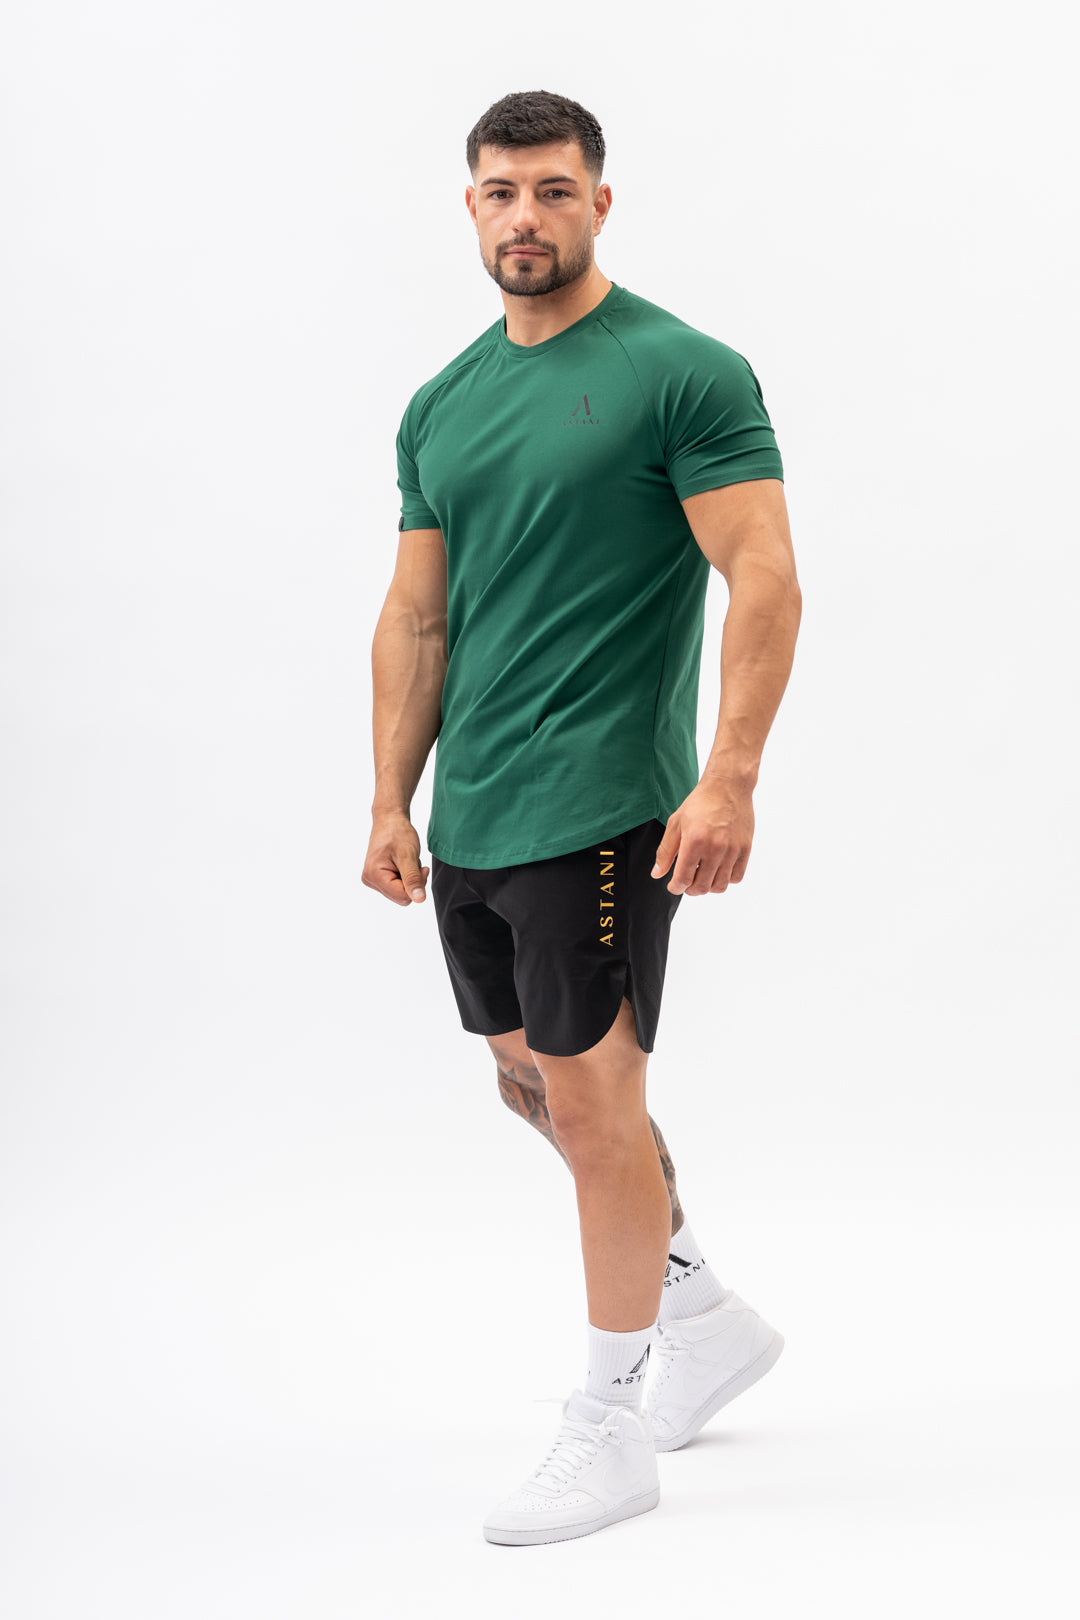 A CODE T-Shirt - Verde Oscuro